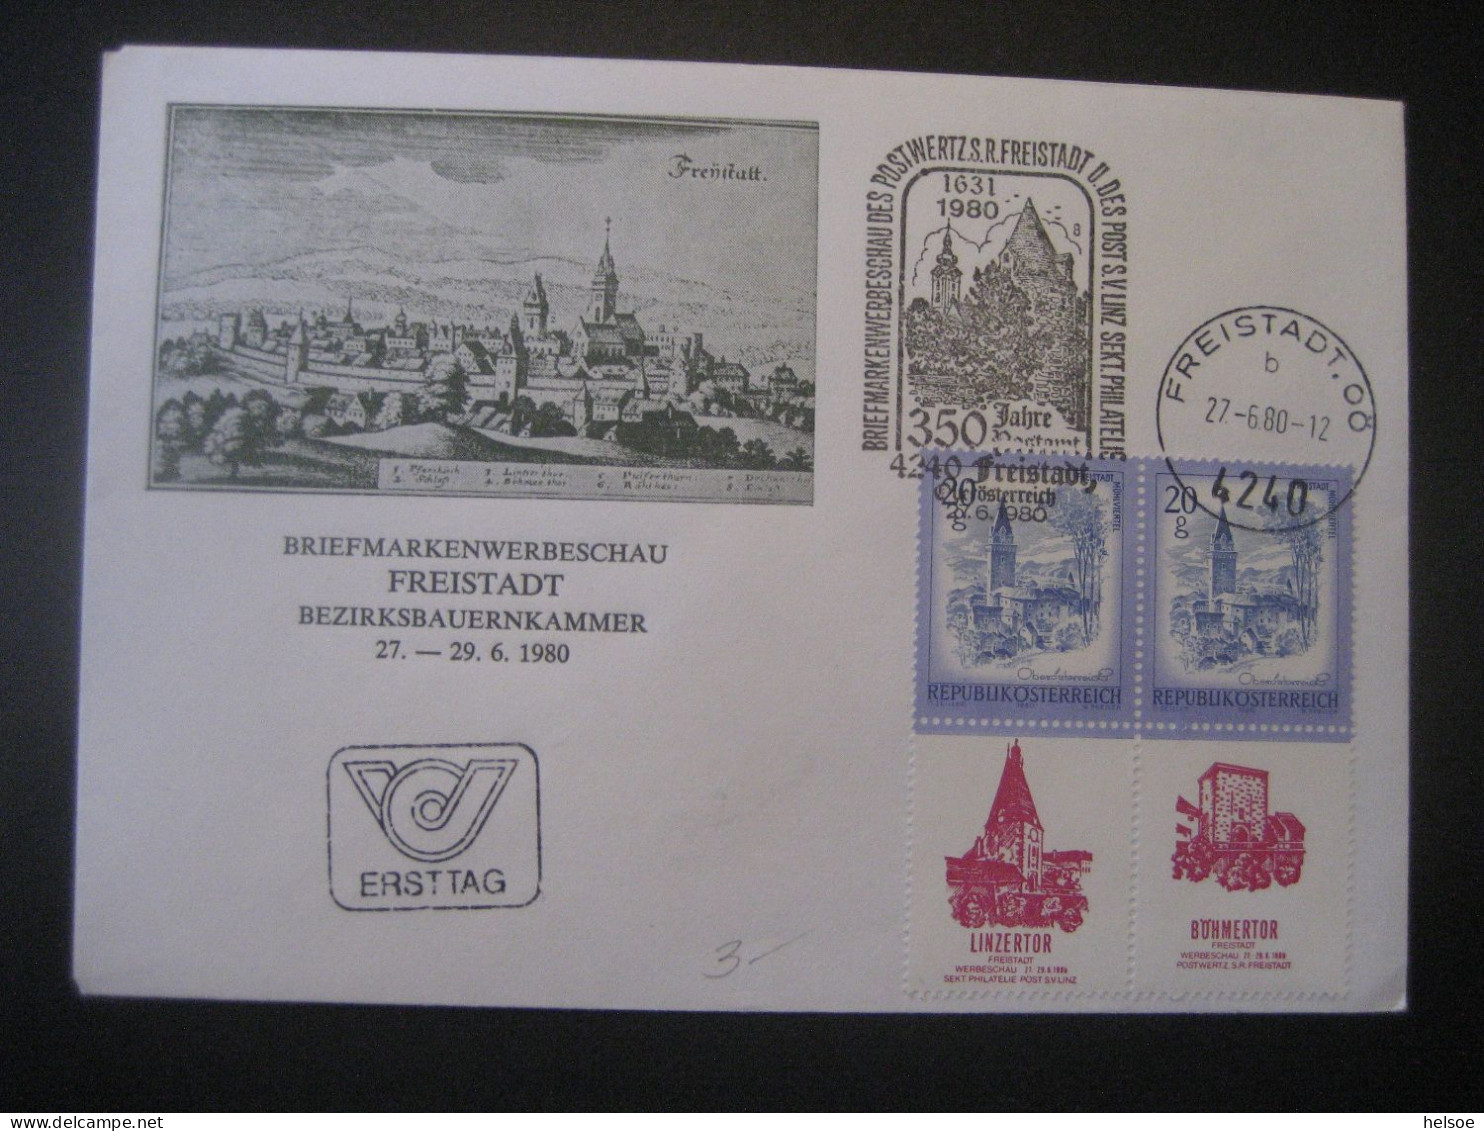 Österreich 1980- FDC Sonder-Umschlag Freistadt Von Der Briefmarkenwerbeschau Mit Allongen, MiNr. 1649 - Covers & Documents